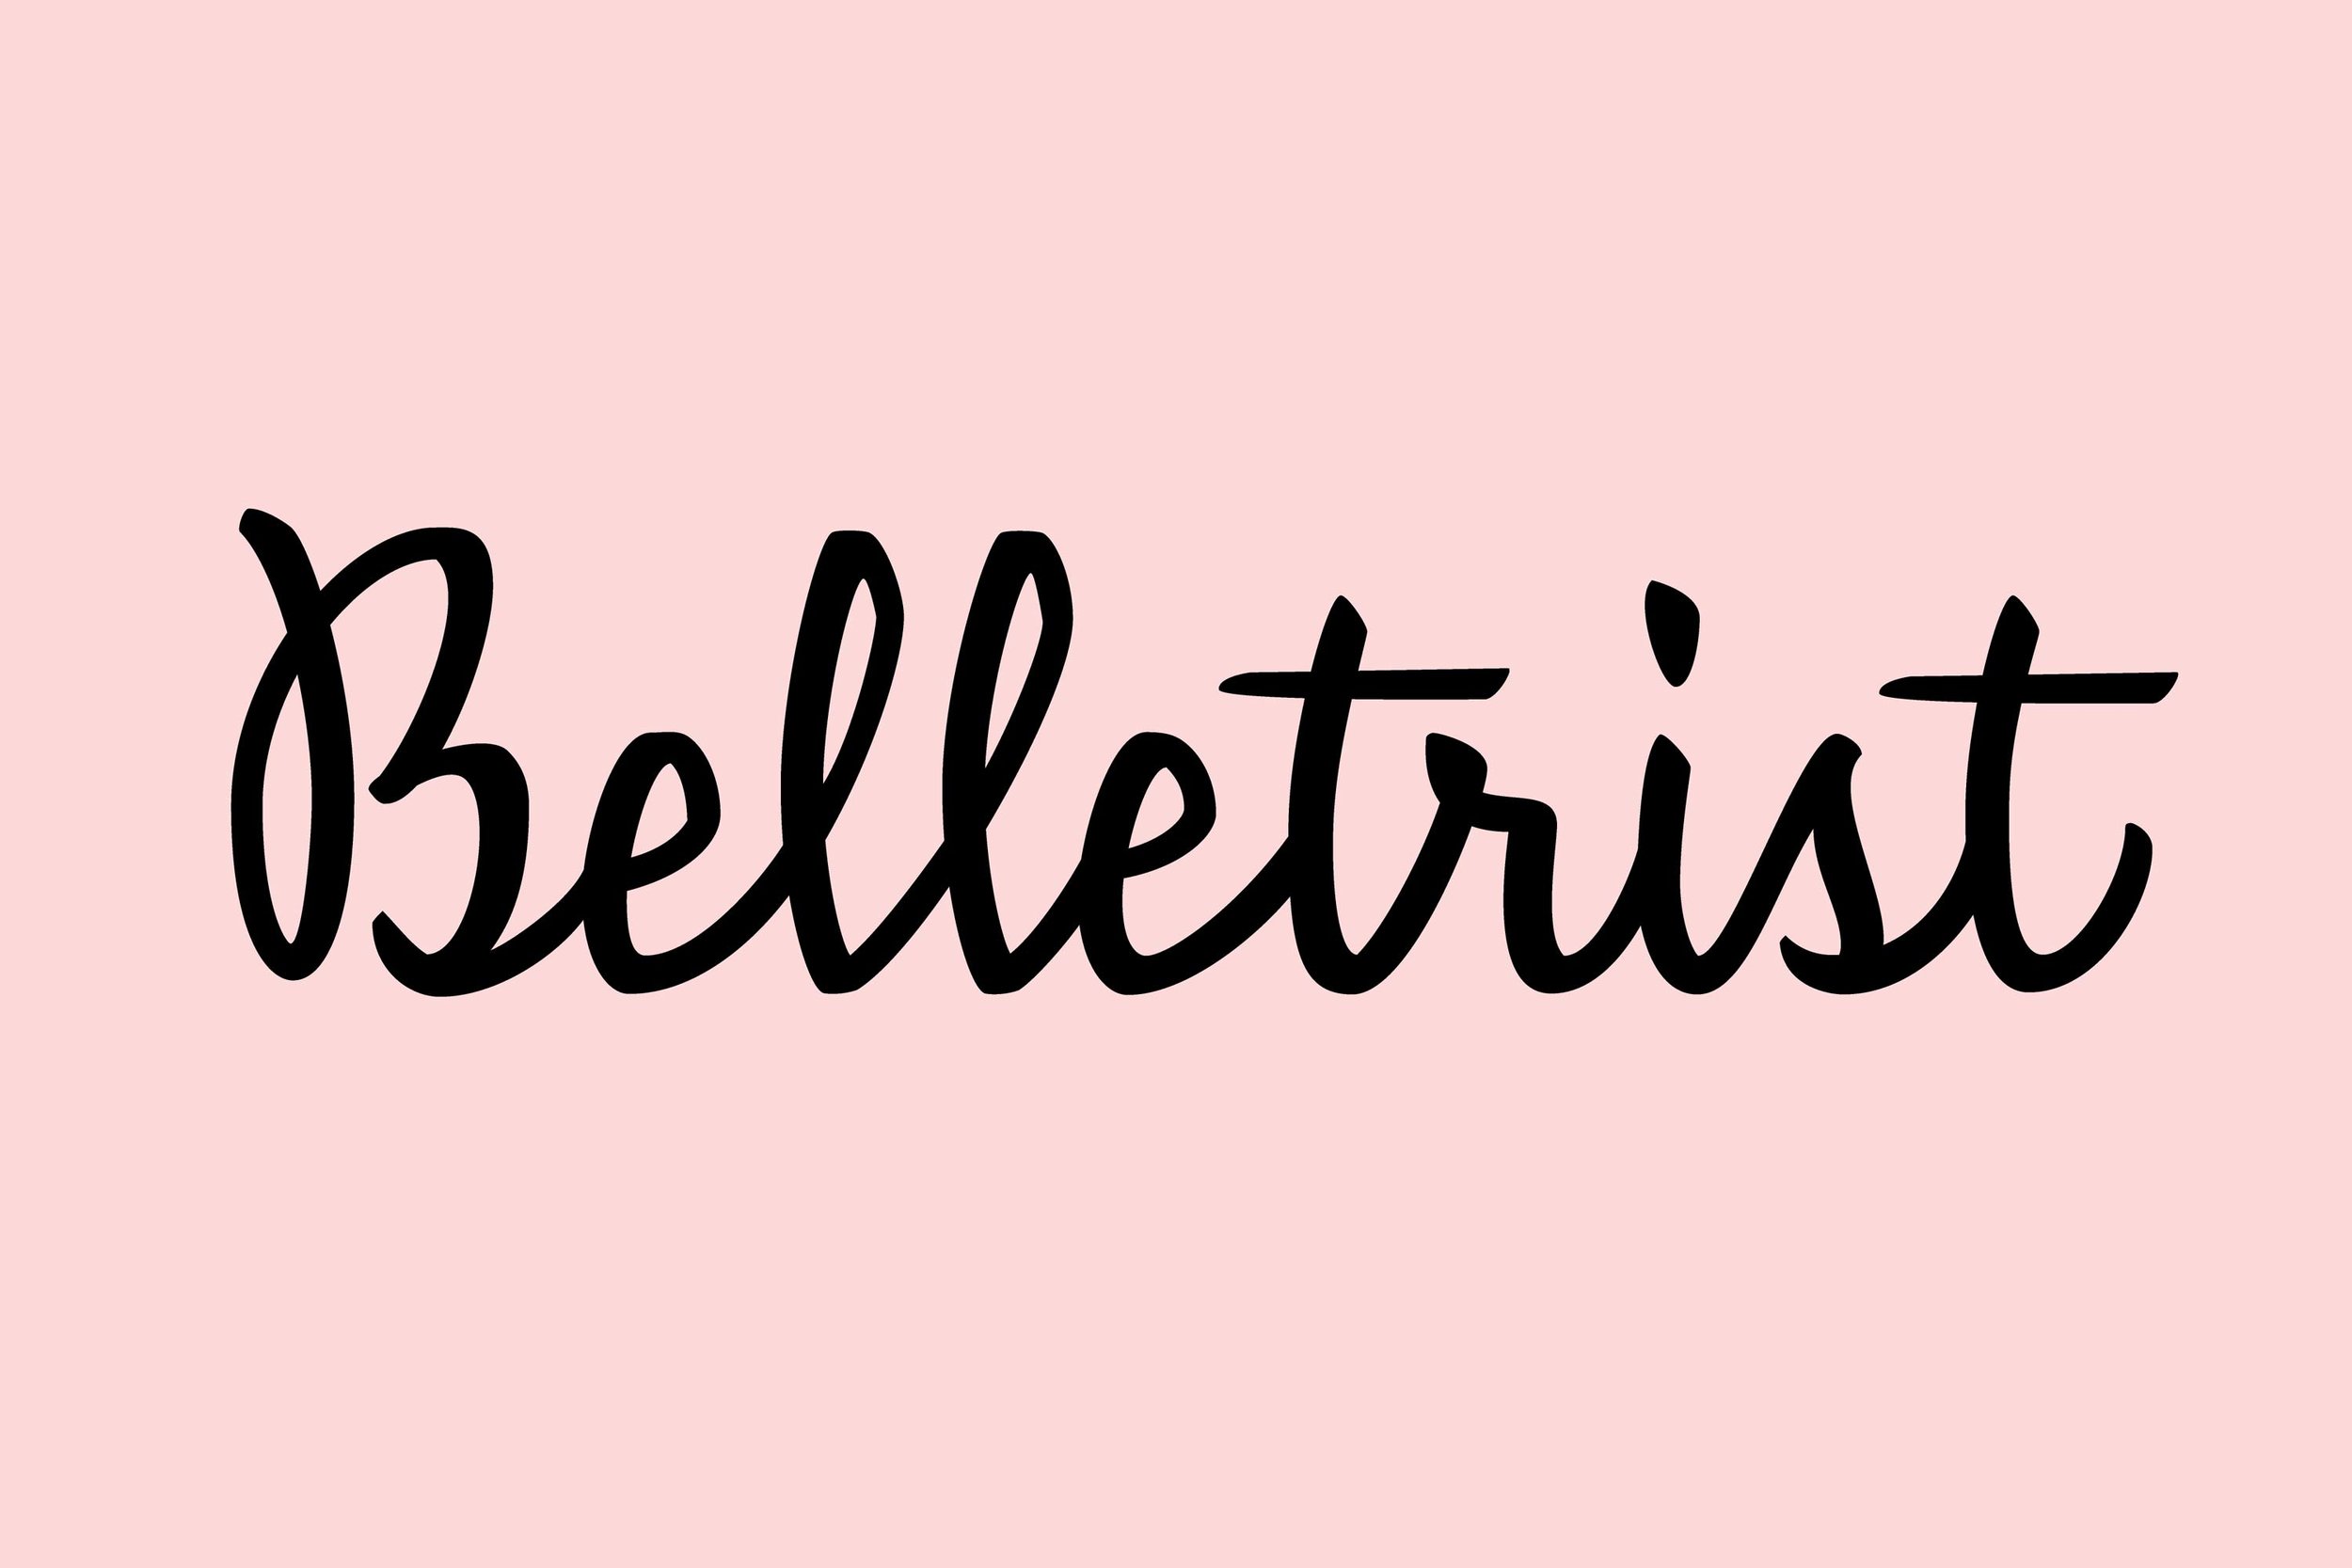 Erin-Ellis-hand-lettered-logo-for-Belletrist.jpg